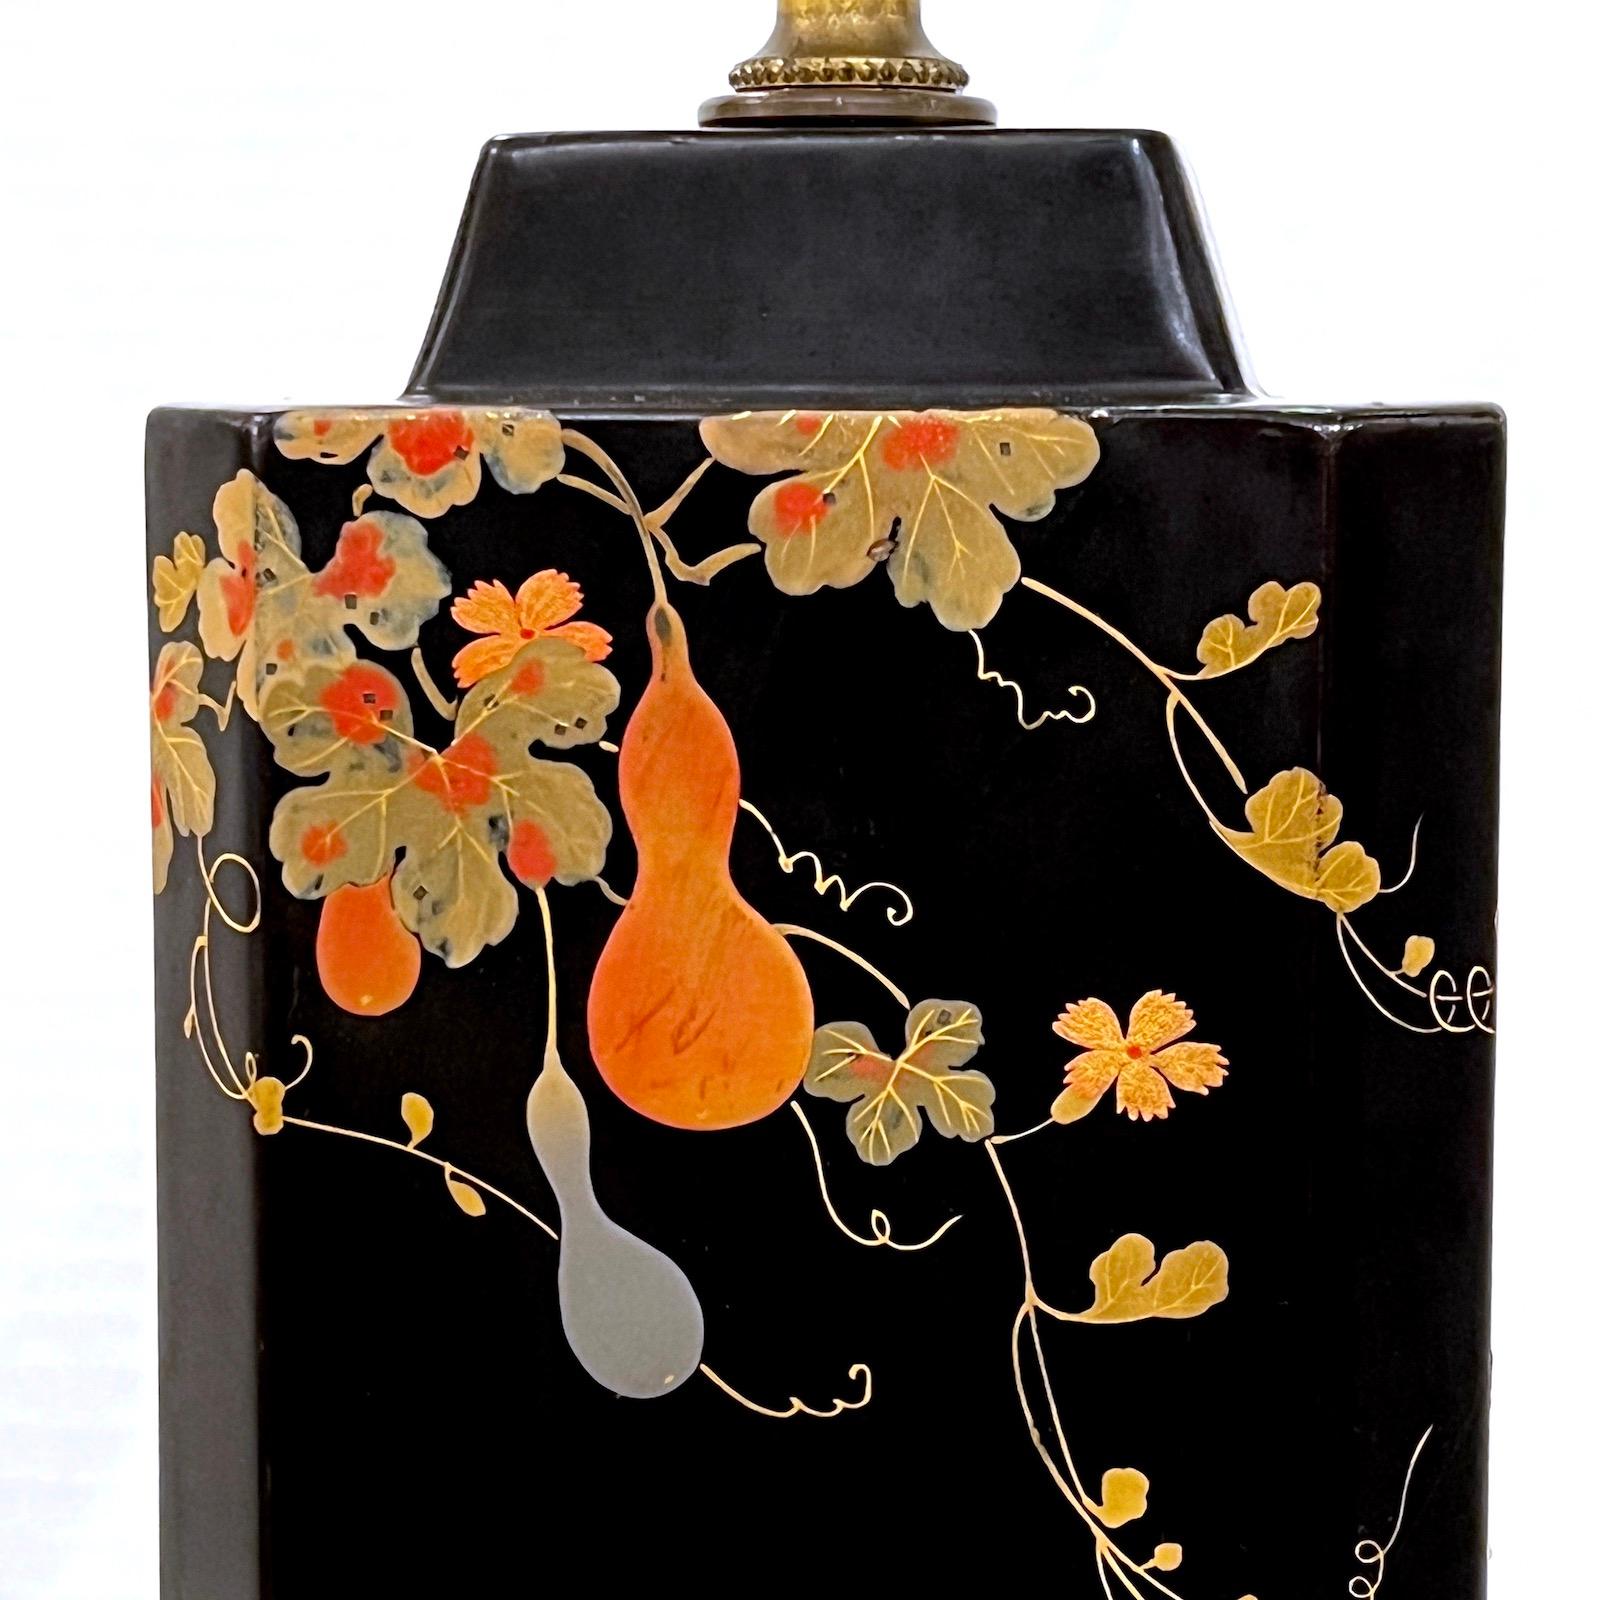 Lampe de table japonaise laquée des années 1920 avec détails dorés.

Mesures :
Hauteur du corps : 13